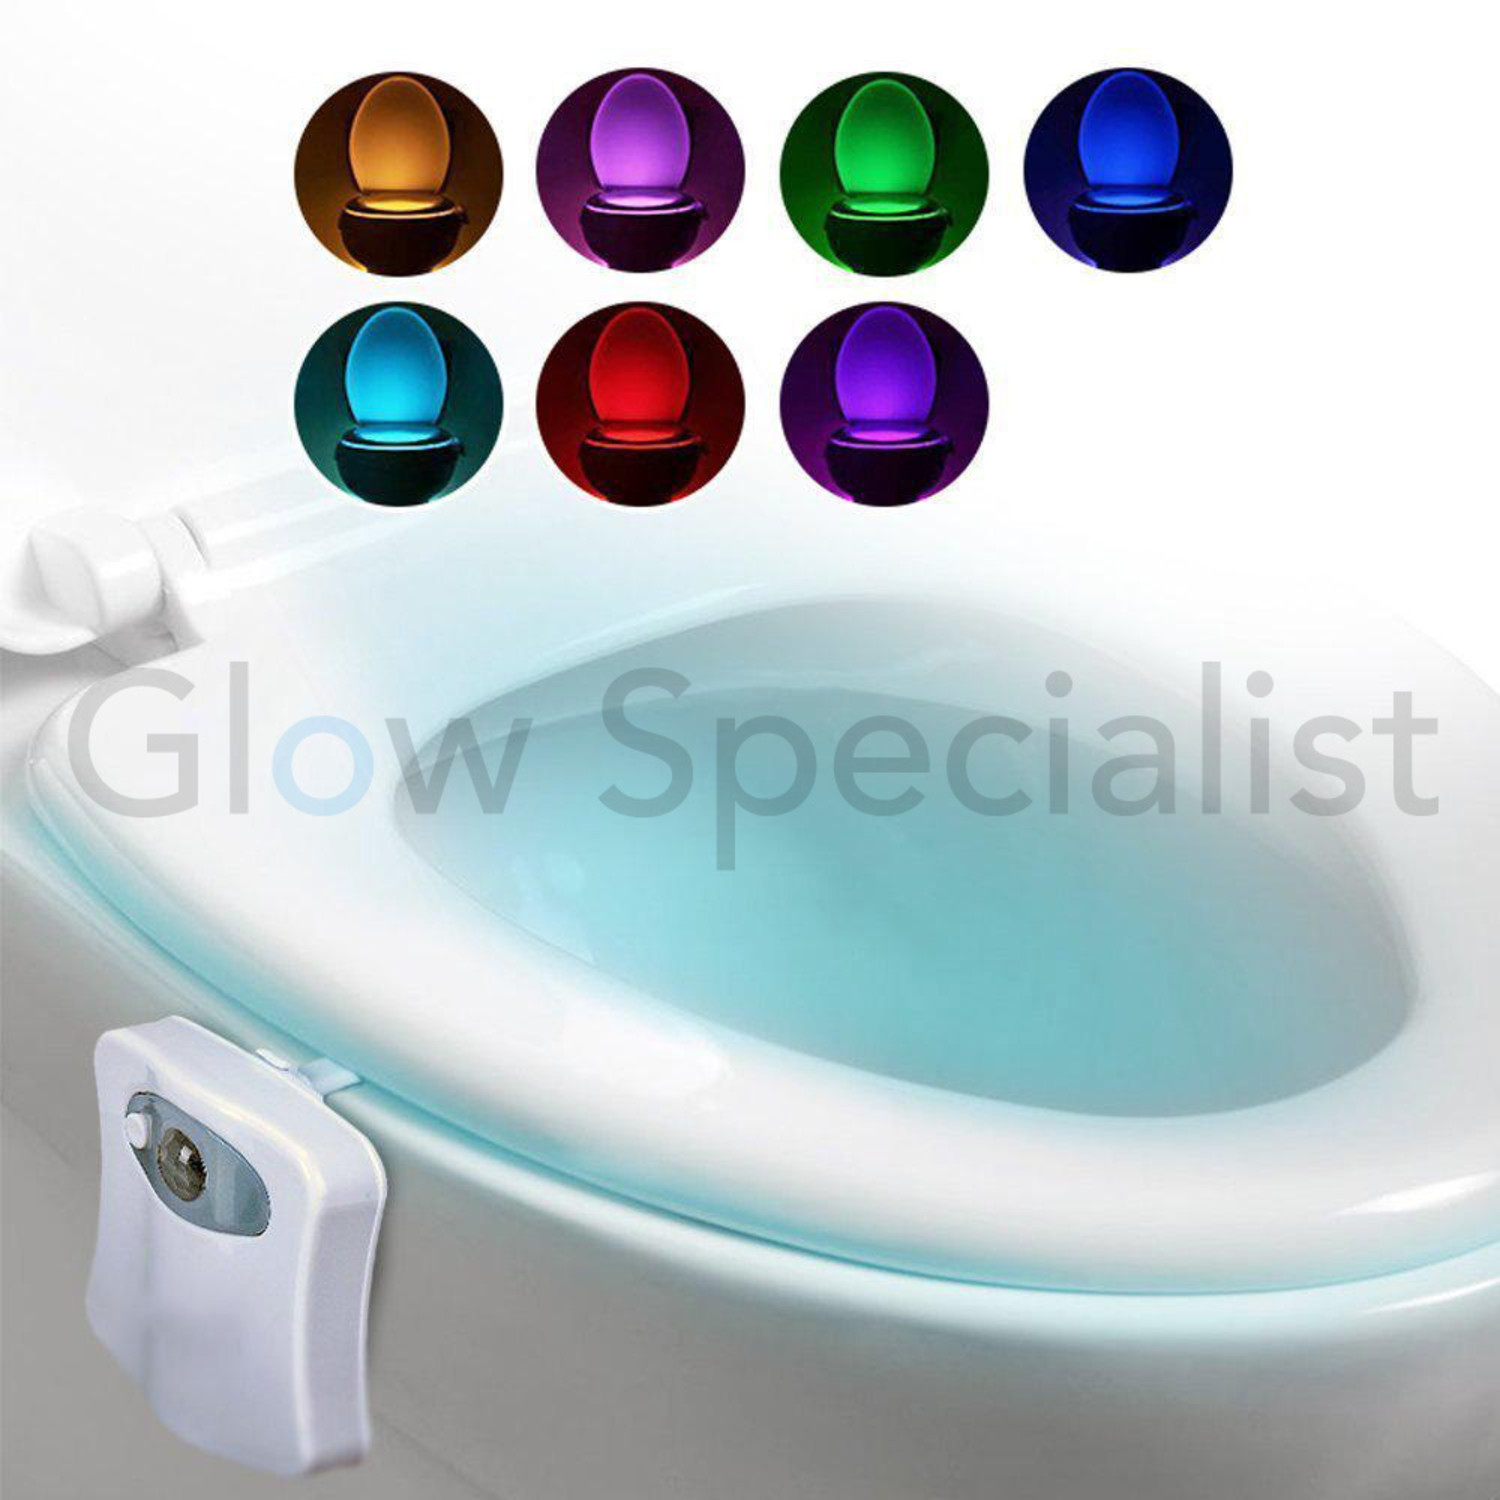 Lightbowl LED Toilet Bowl Light